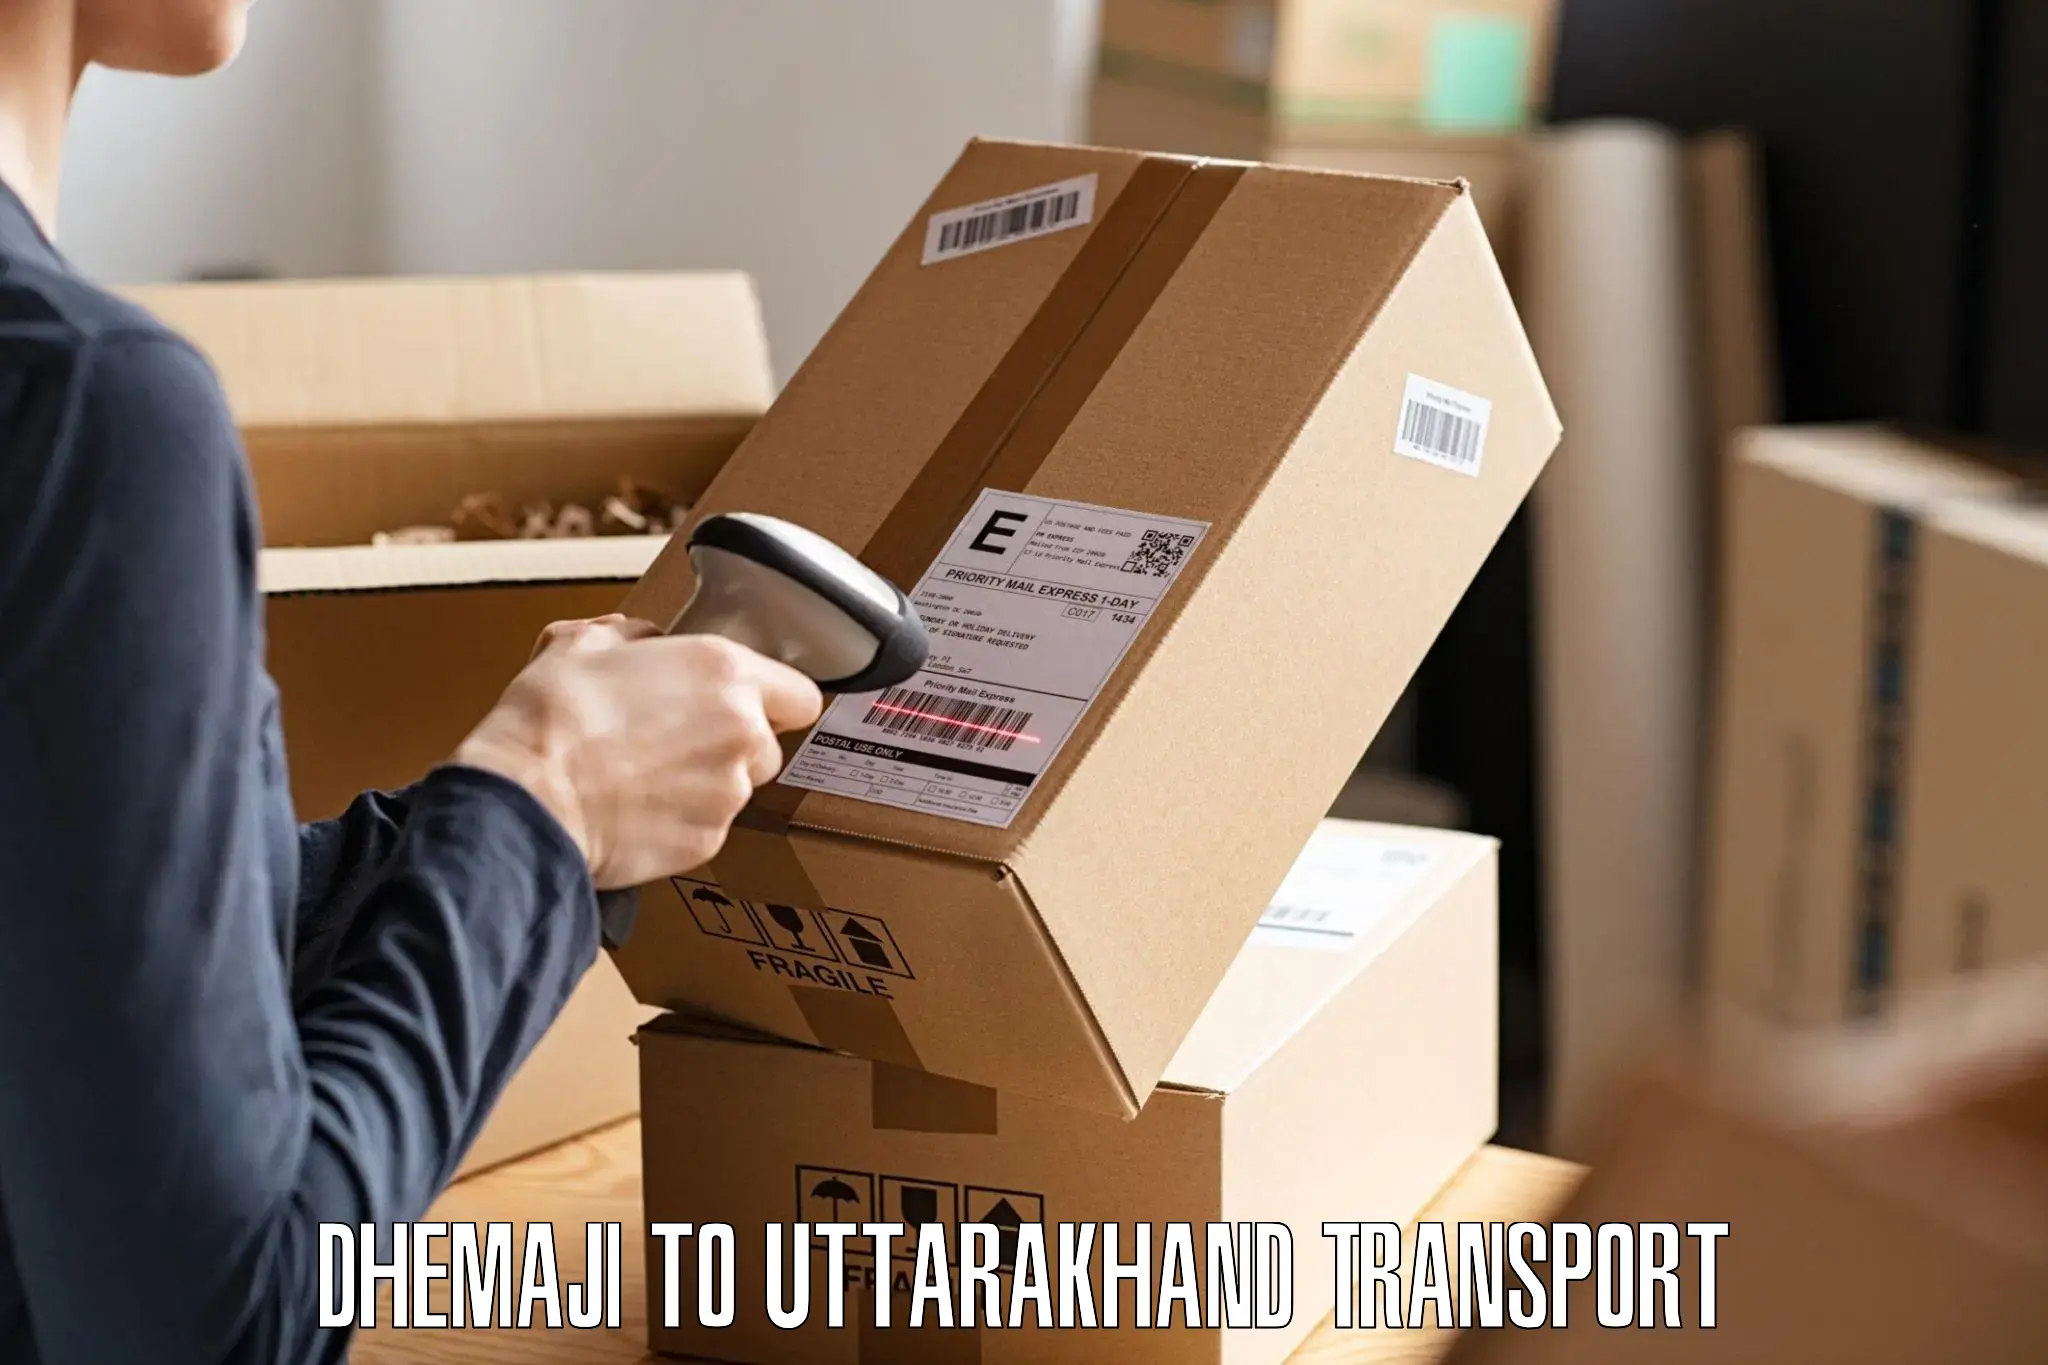 Pick up transport service Dhemaji to Gairsain